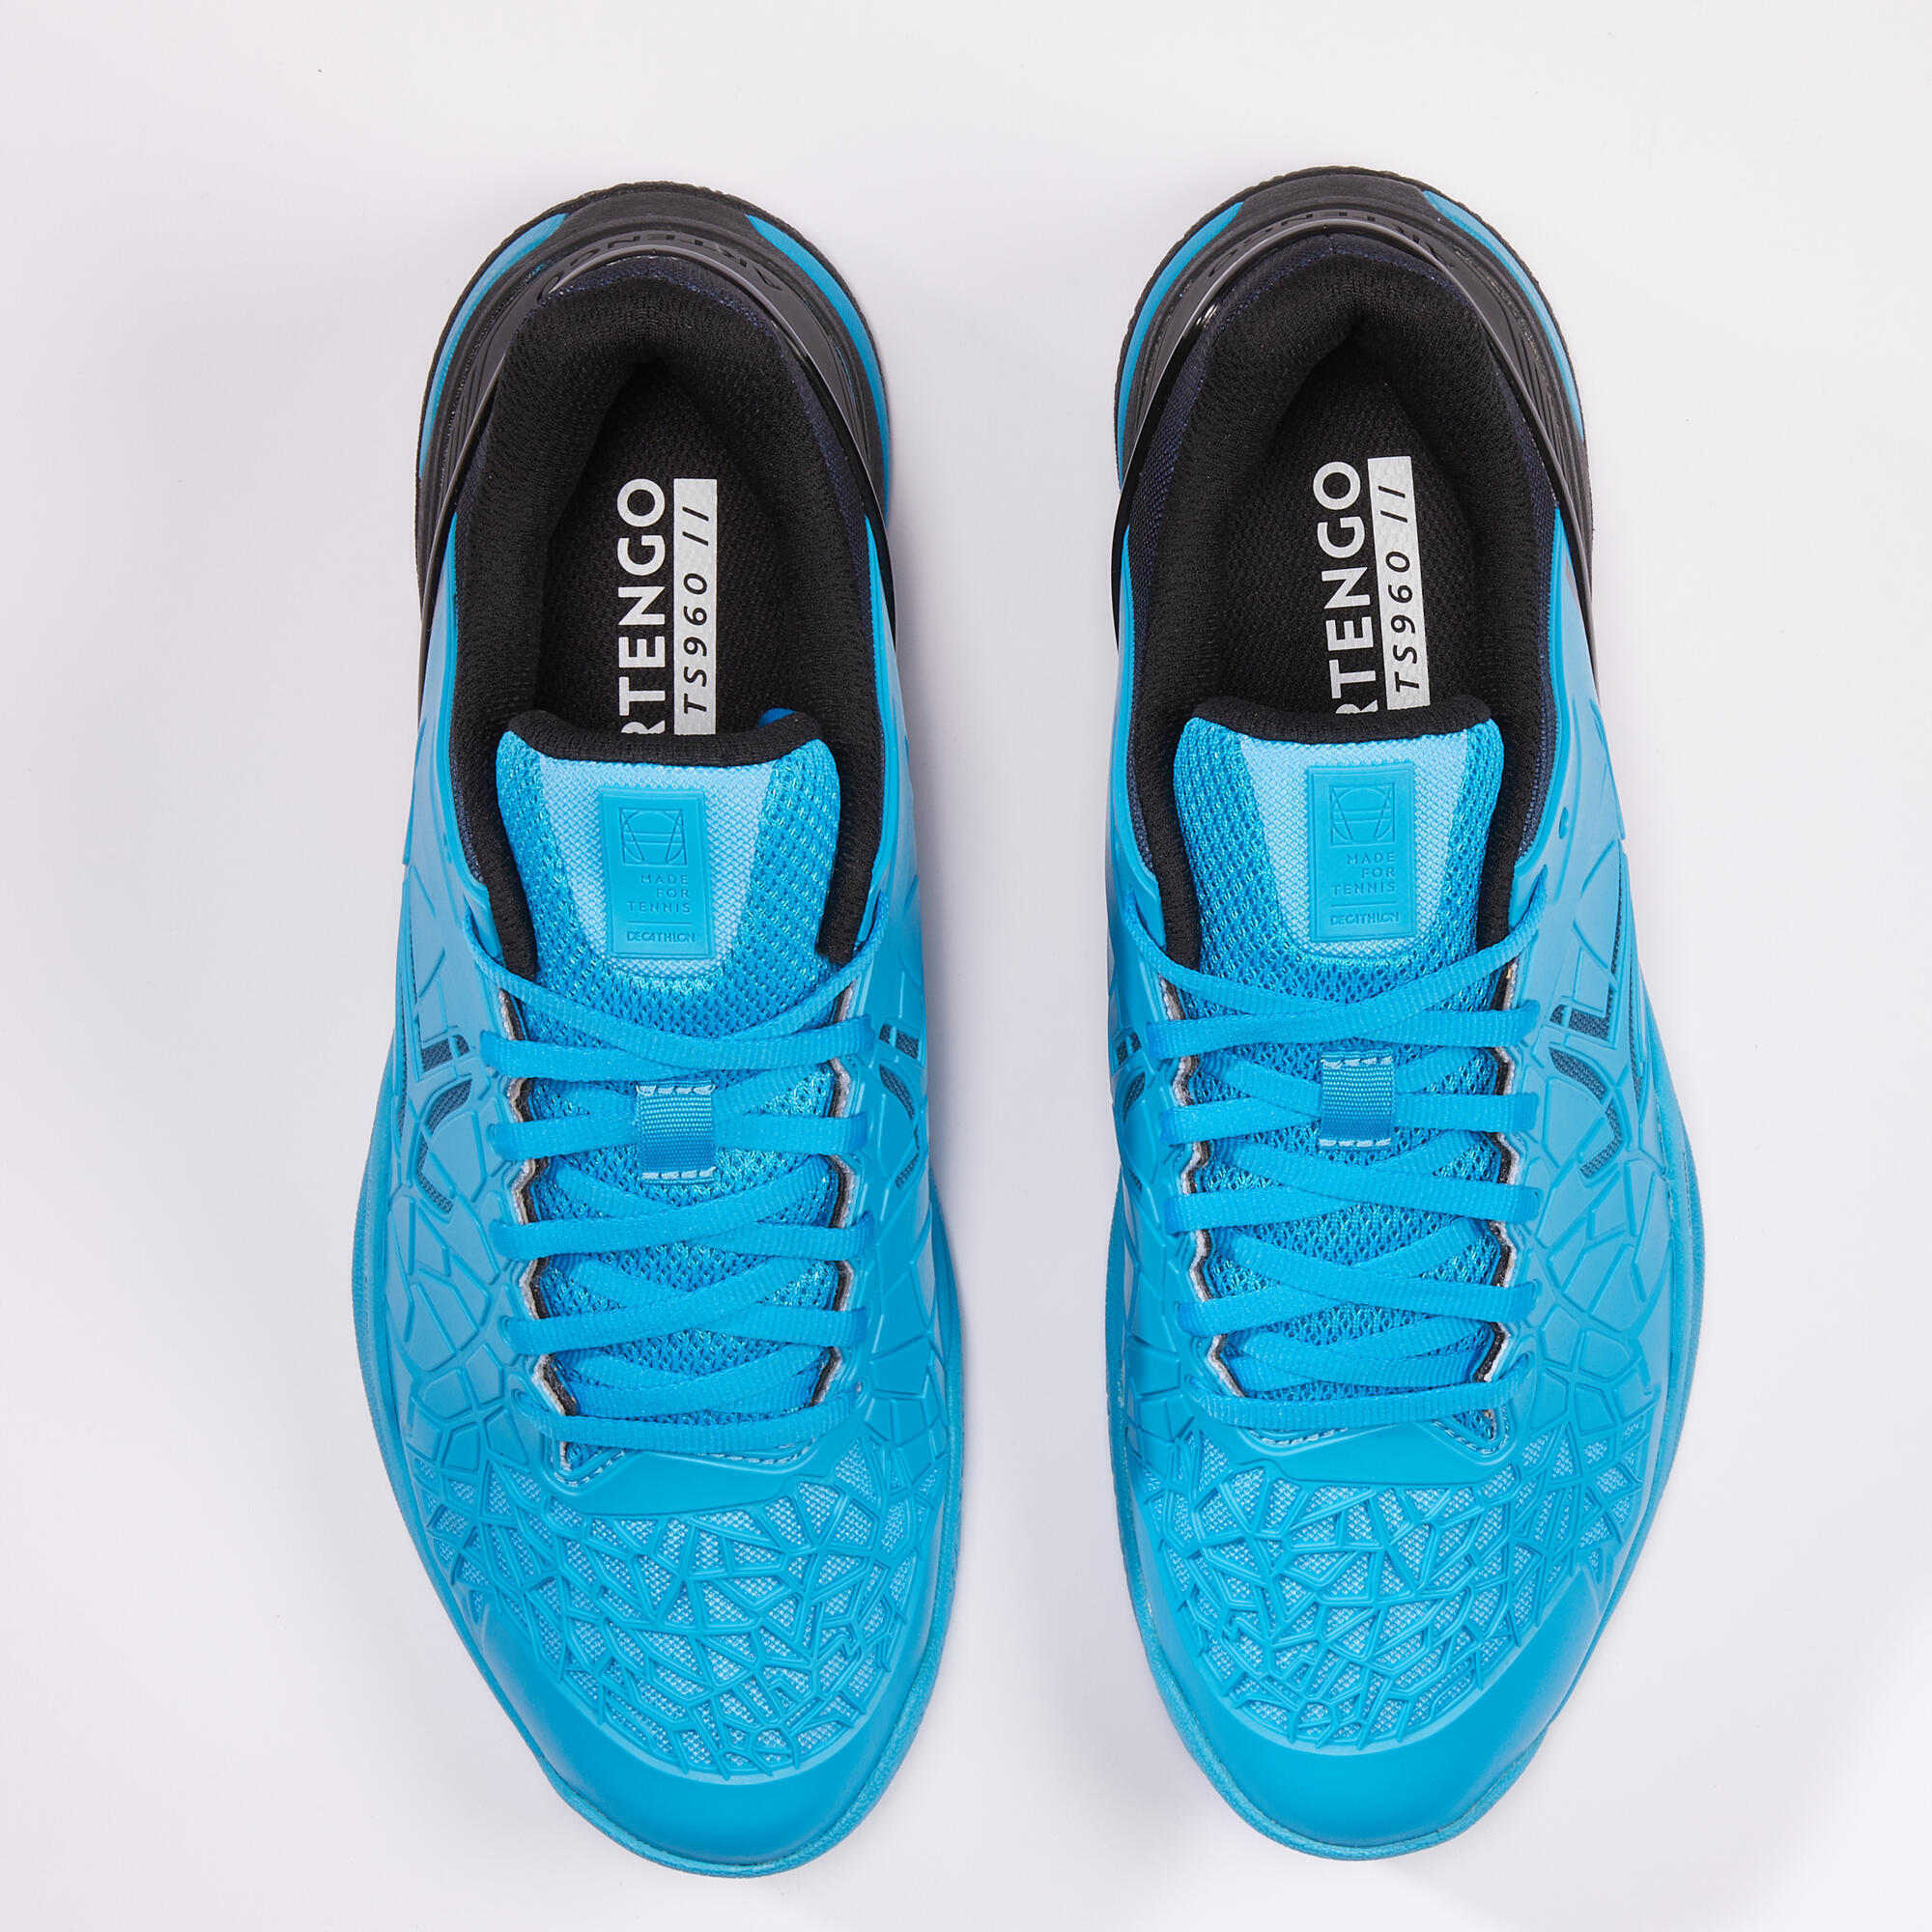 Men's Multicourt Tennis Shoes Strong Pro - Blue/Black 7/10